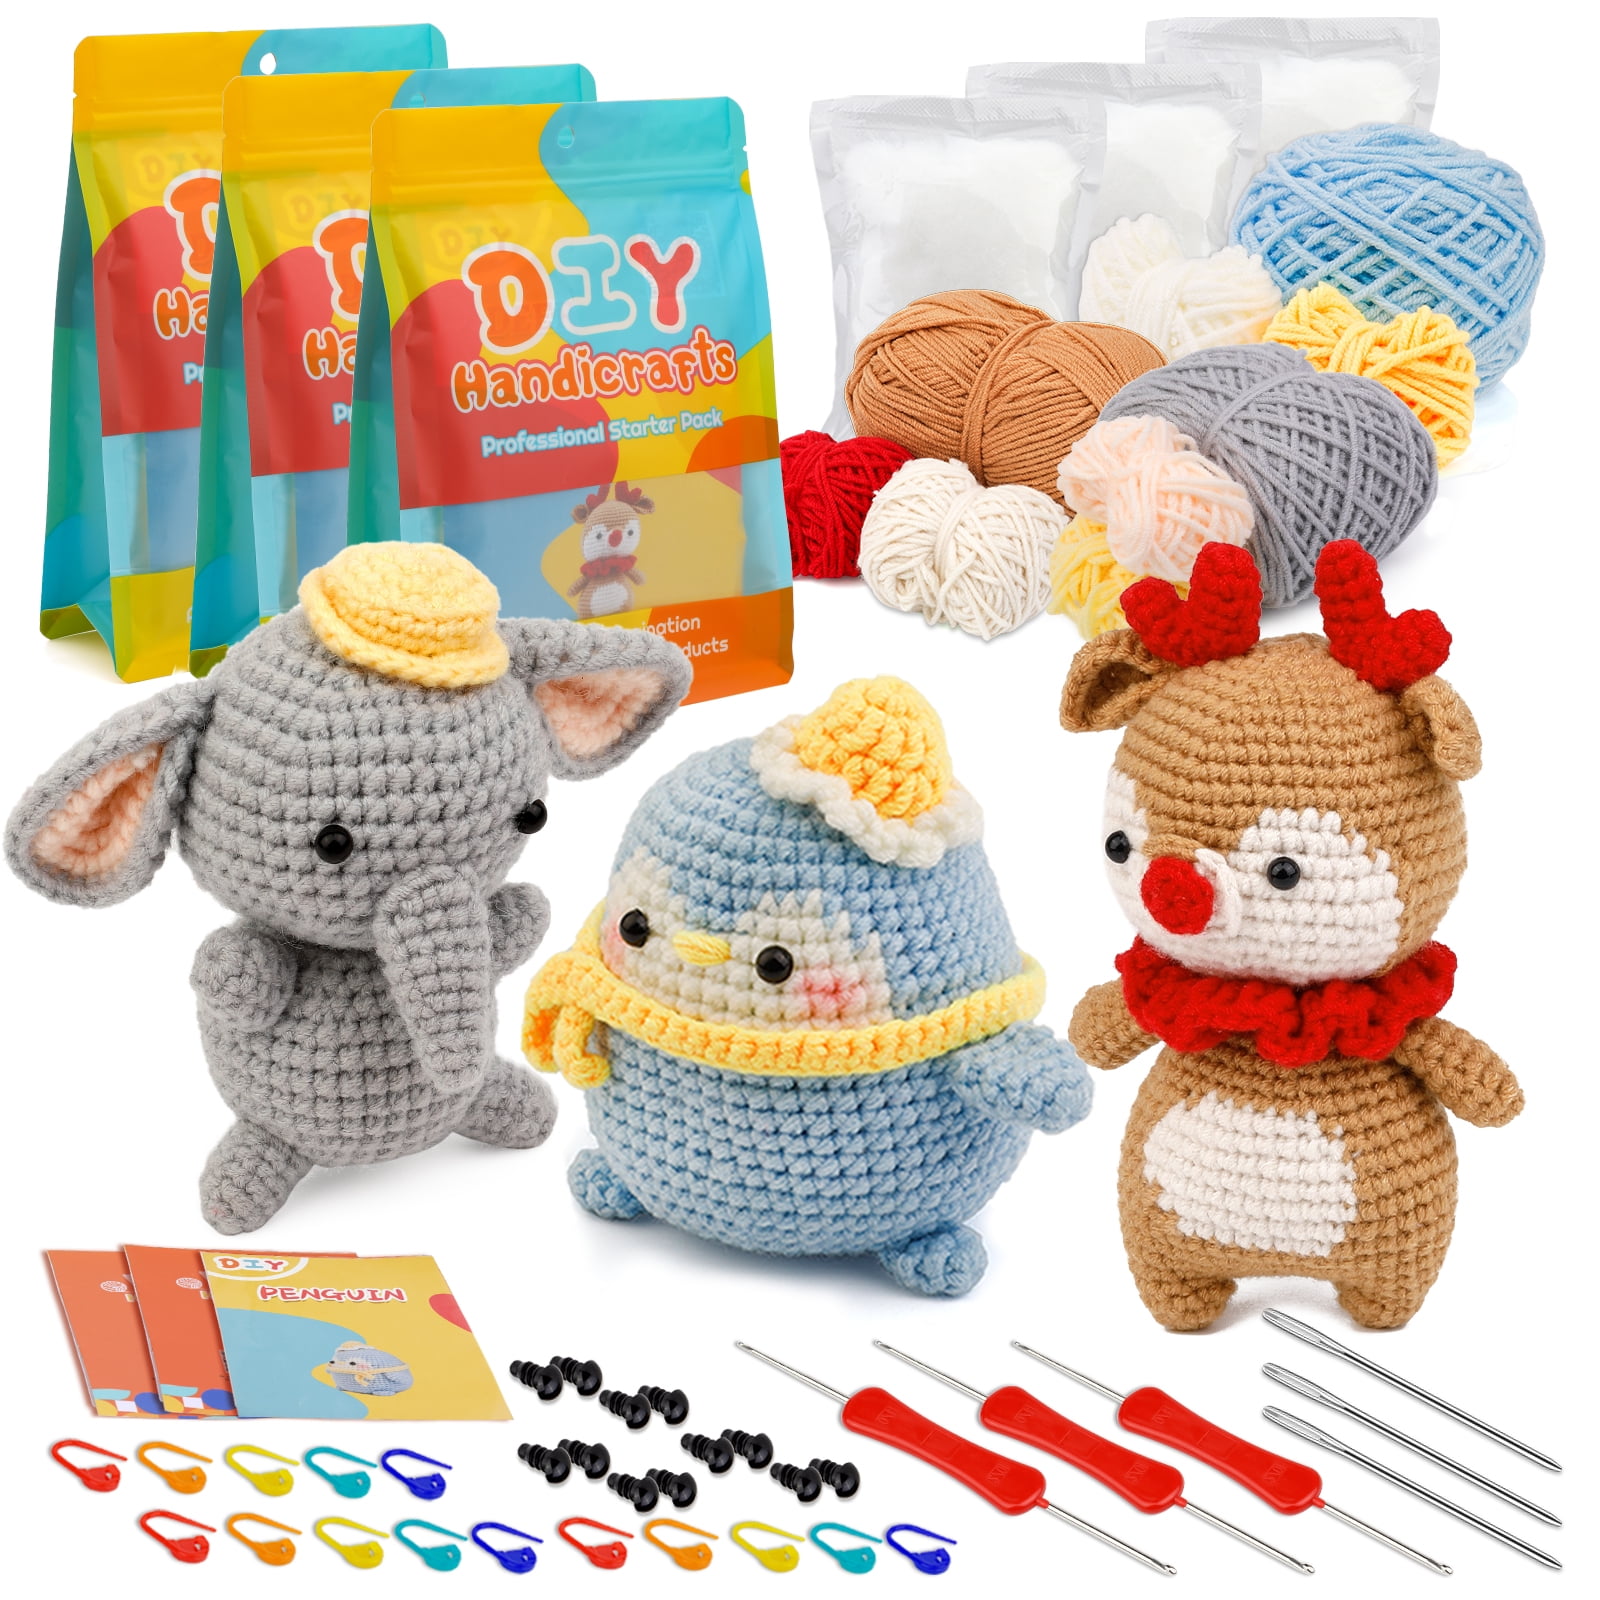 Lucky Snail Crochet Kit for Beginners, 3 Pcs Crochet Animal Kit, Crochet Starter Kit for Adult Kids with Complete Beginners Step-by-Step Video